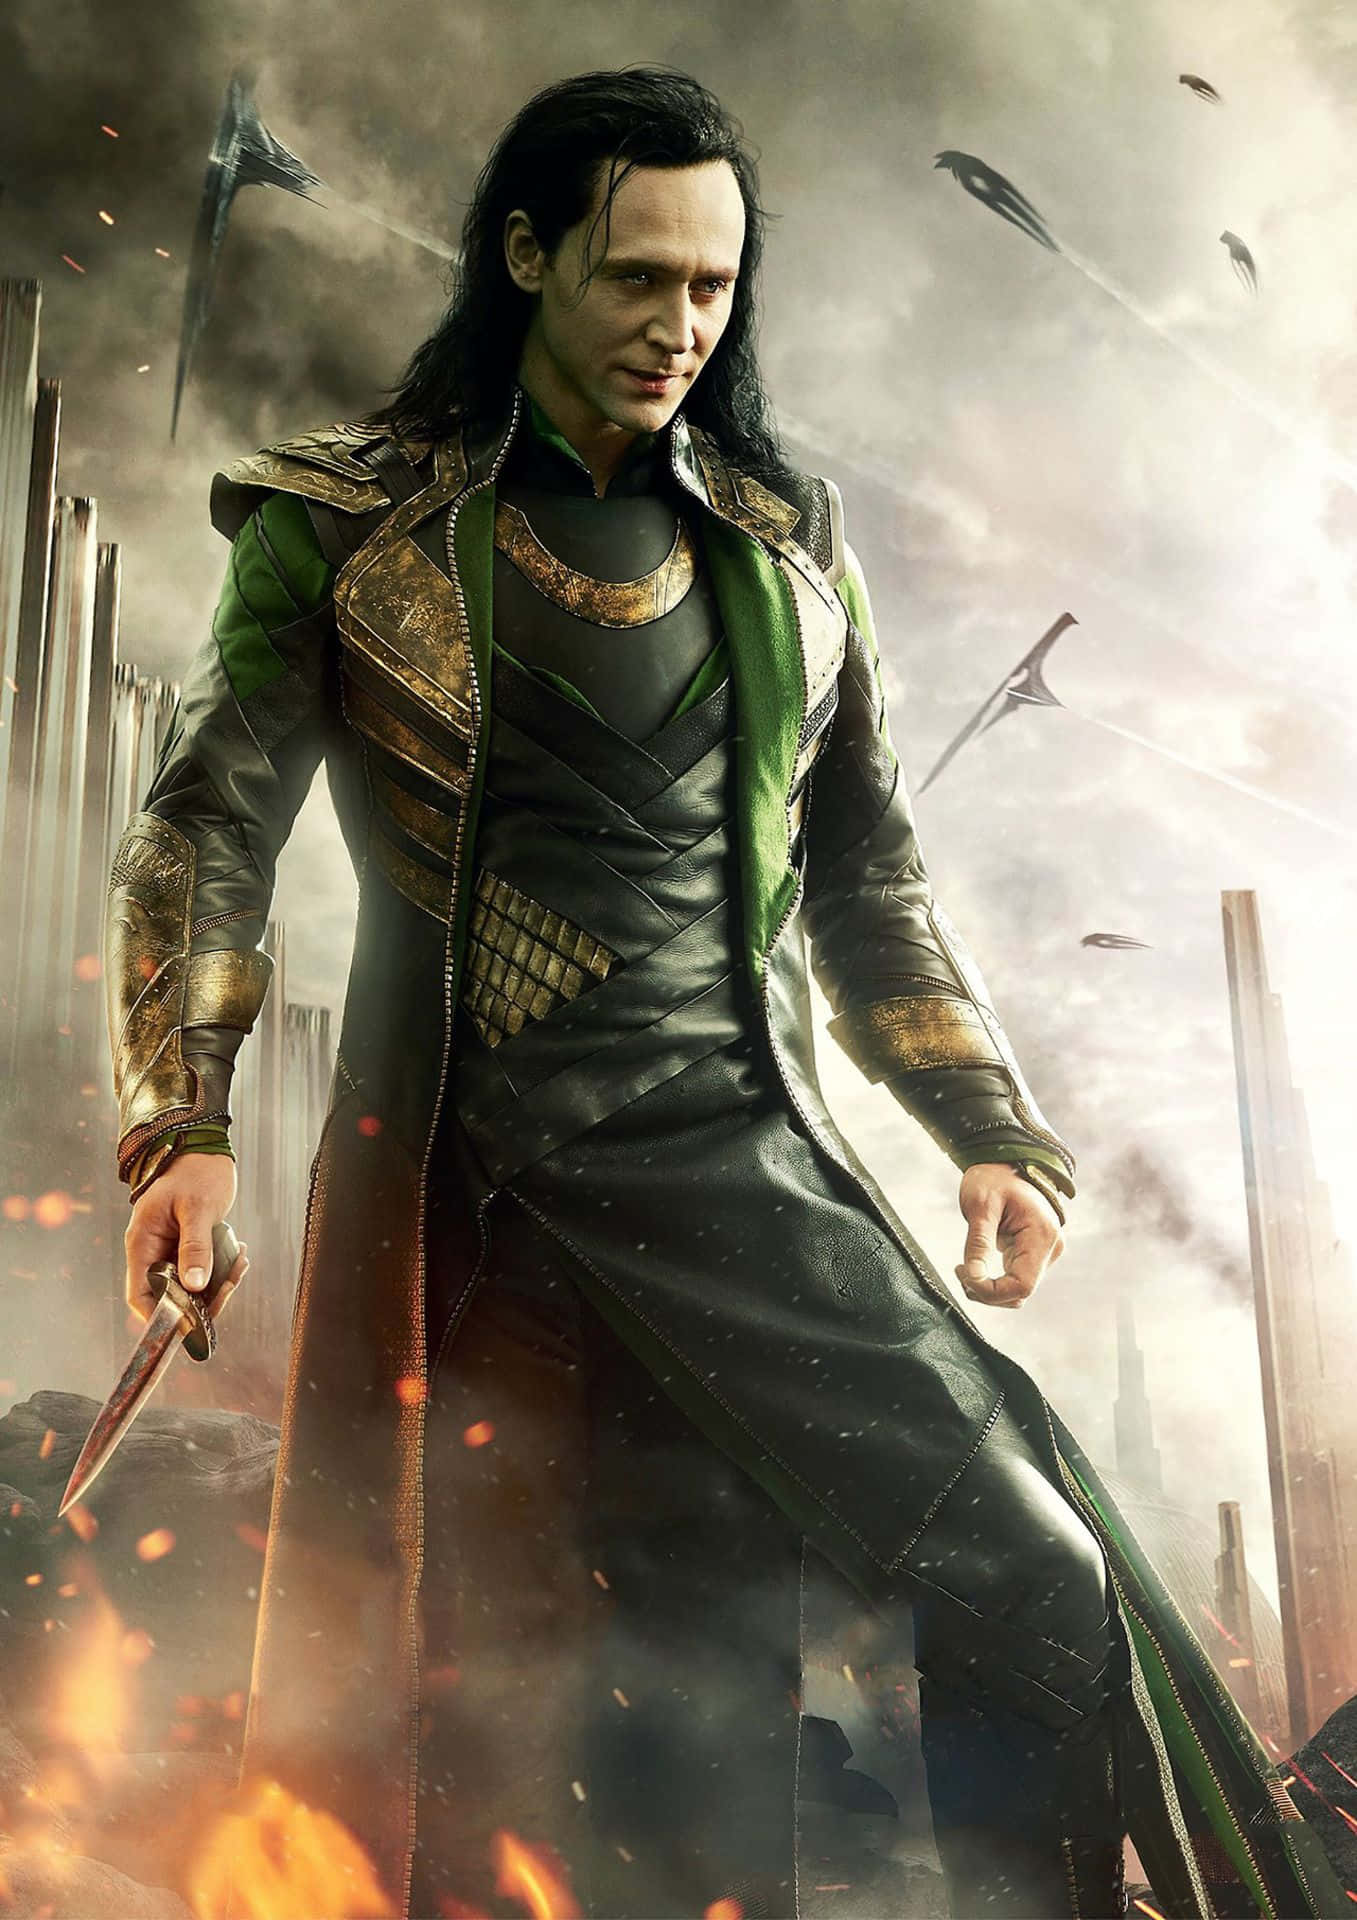 Loki, the Mischievous Asgardian God